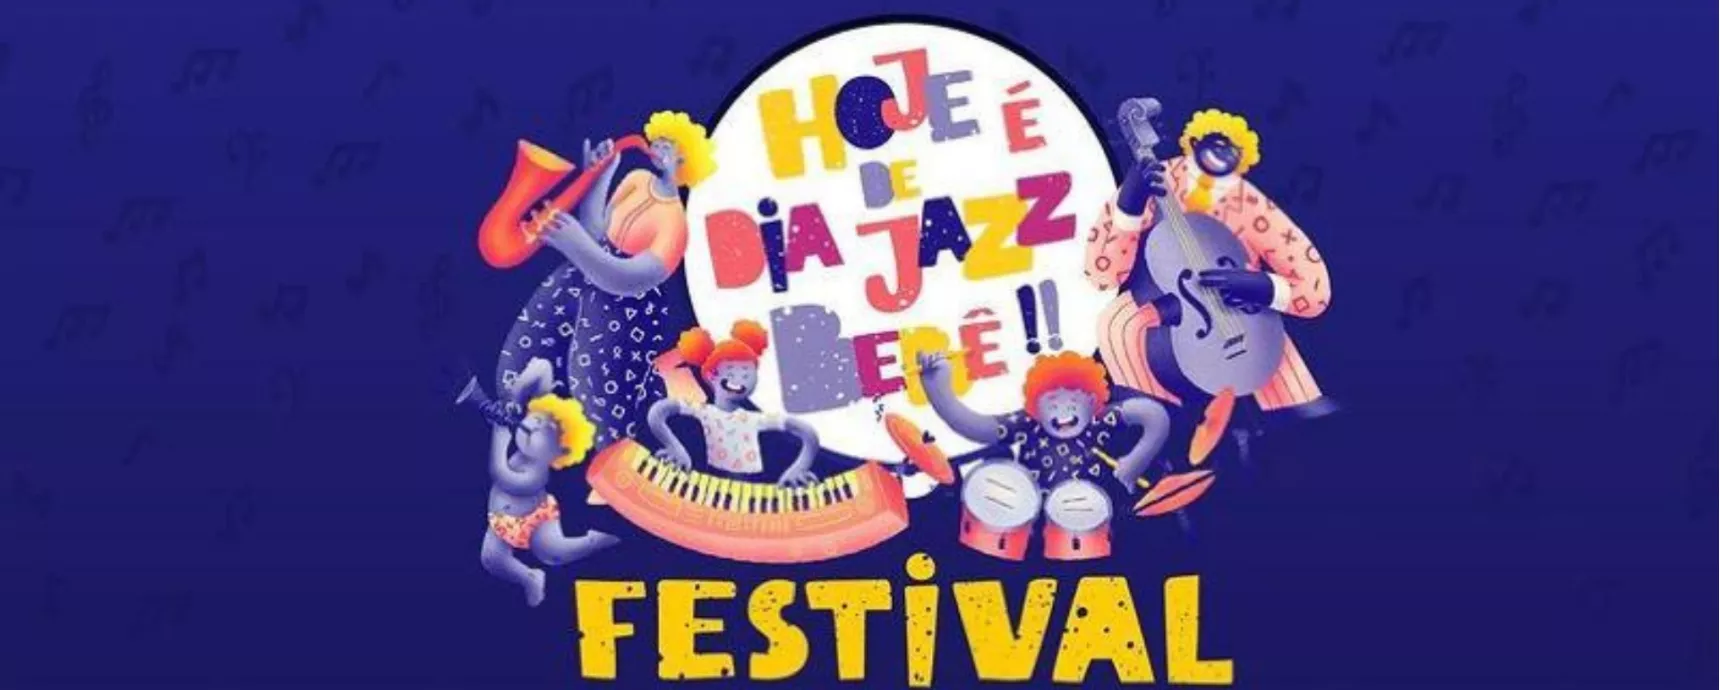 Se pospone el evento Hoy es Baby Jazz Day Festival